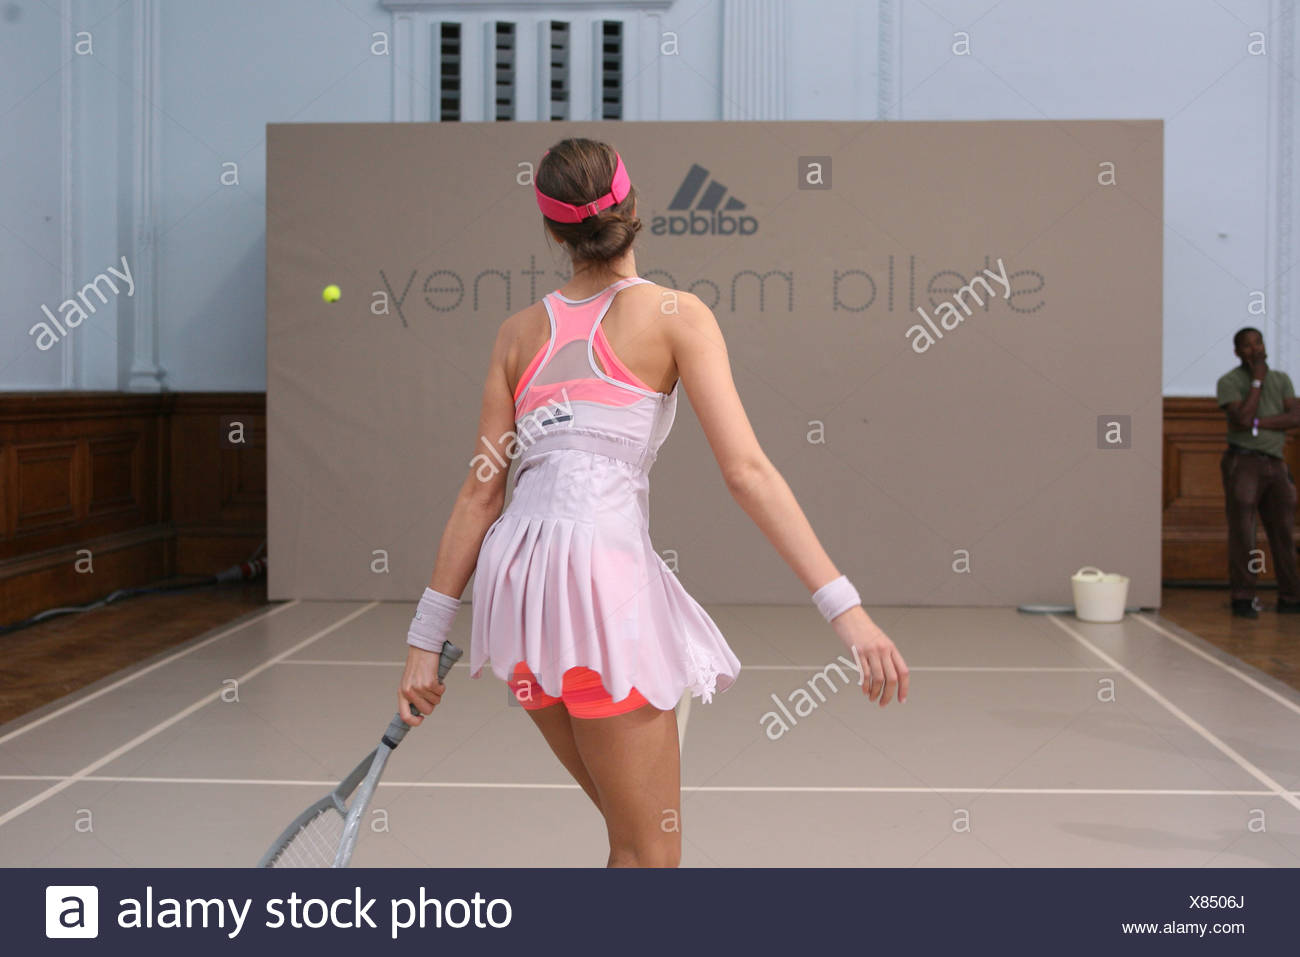 stella tennis